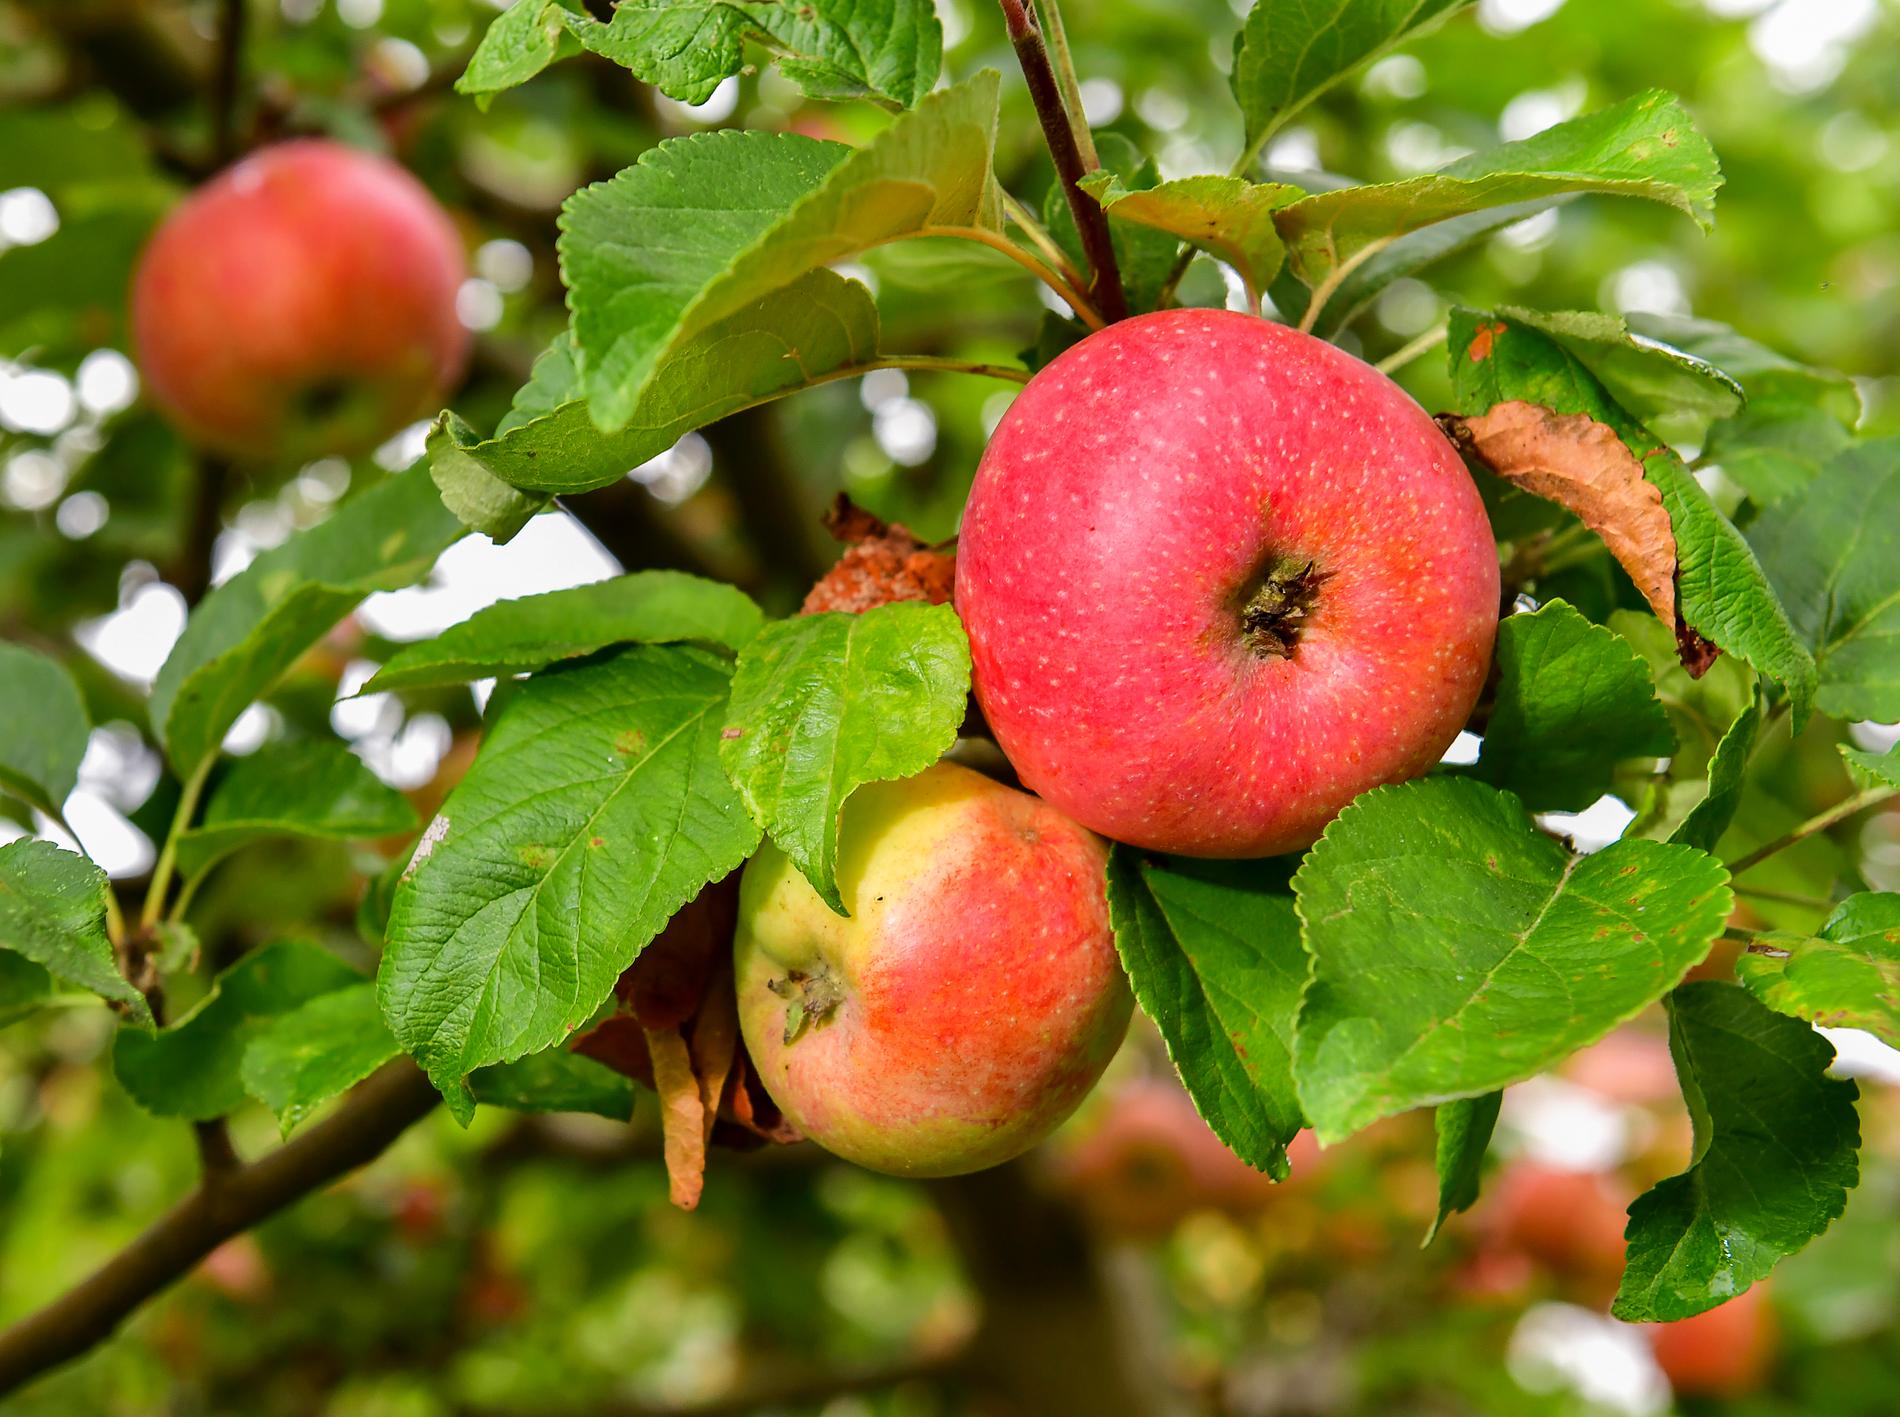 Mängder har frukt har försvunnit från en äppelodlares ägor i Skåne. Arkivbild.